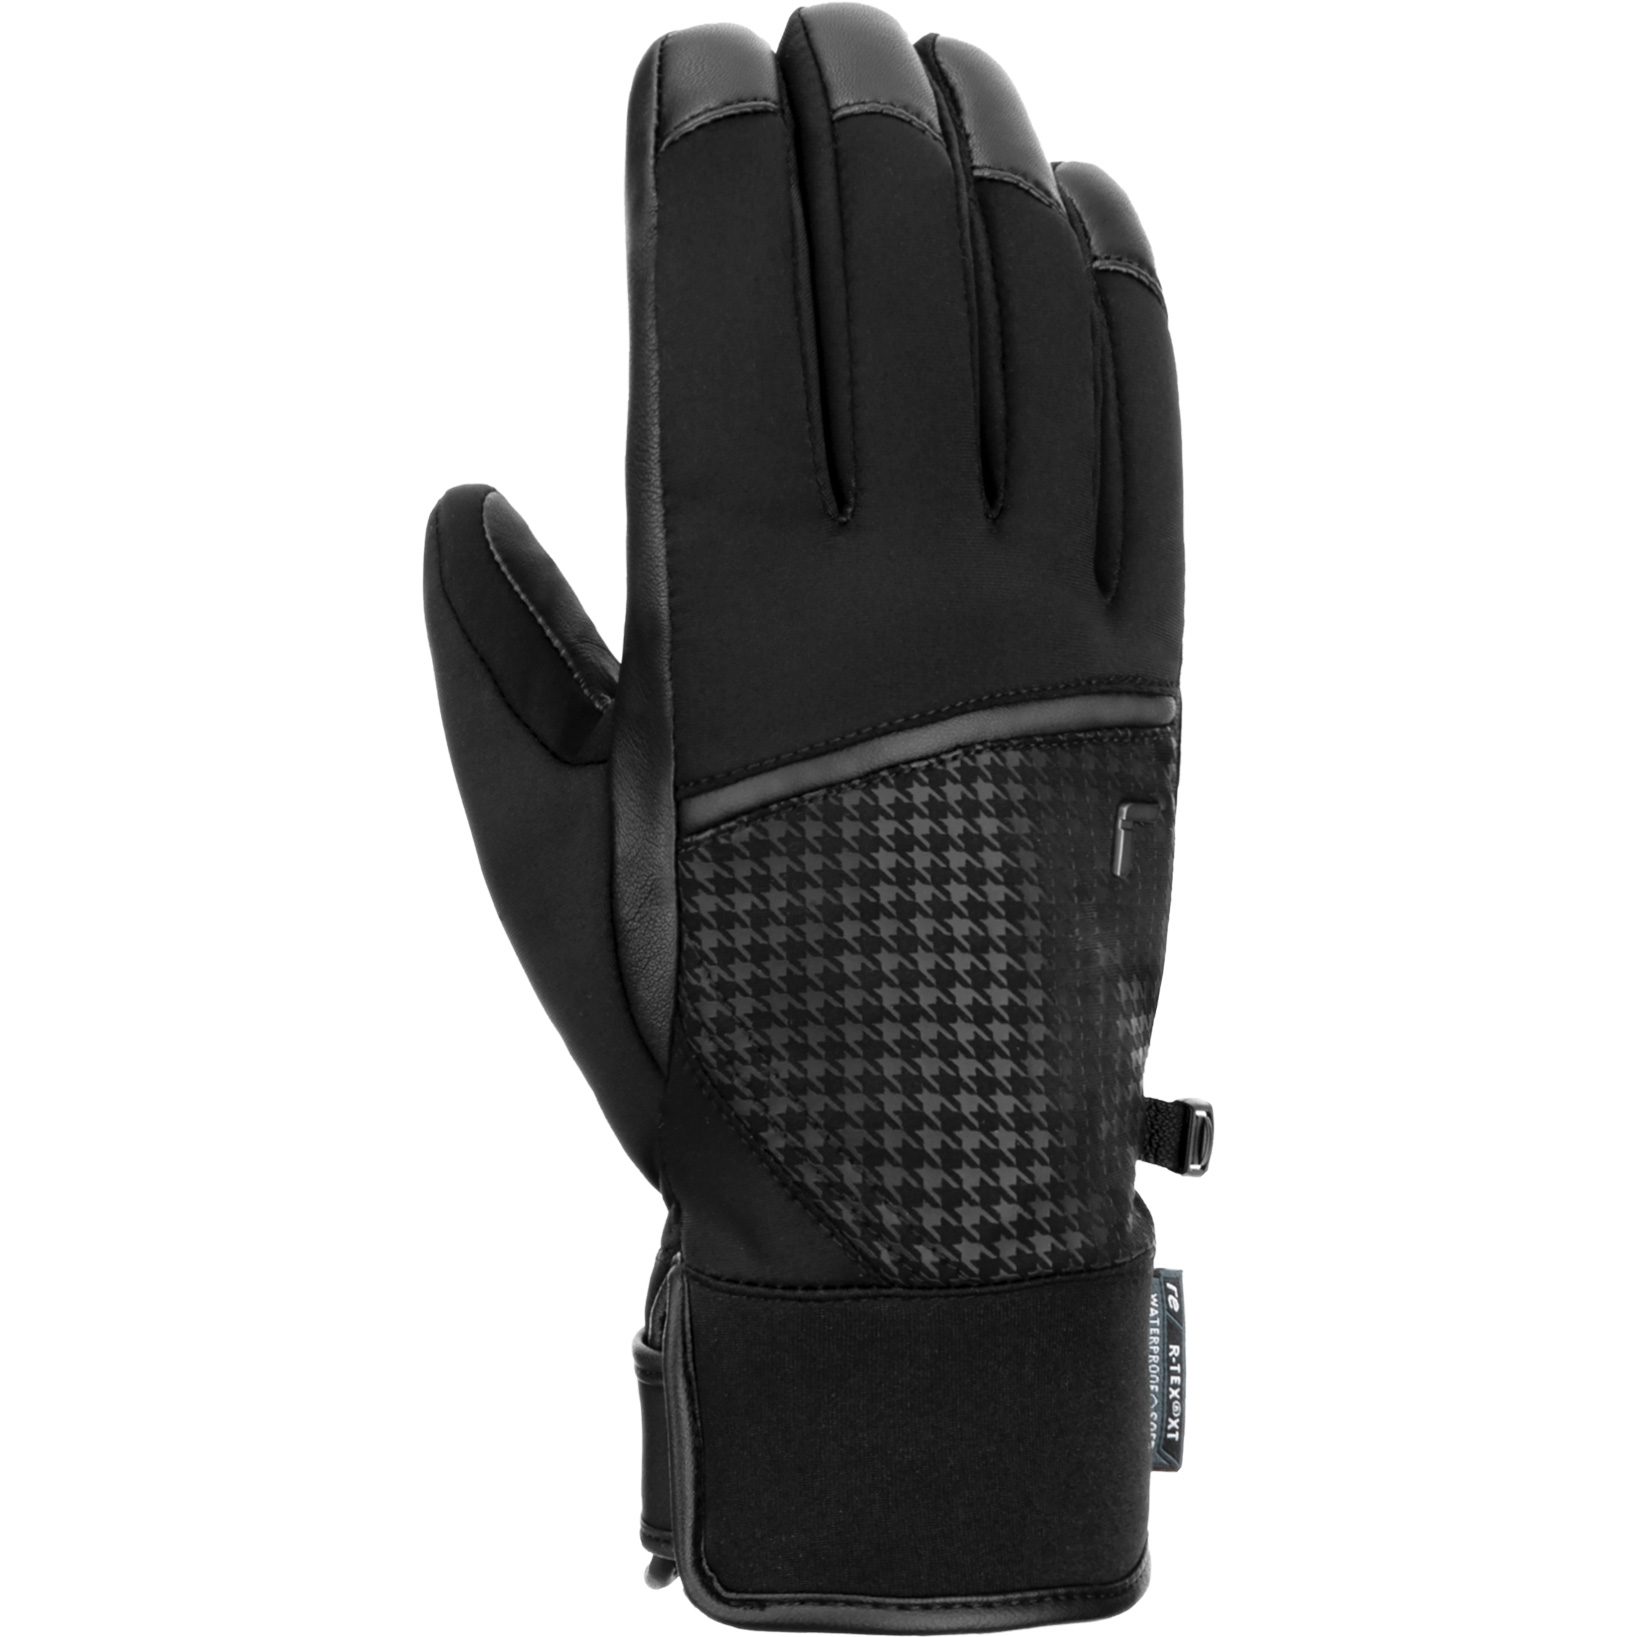 Sport XT im kaufen Bittl Reusch R-Tex® - schwarz Handschuhe Mara Shop